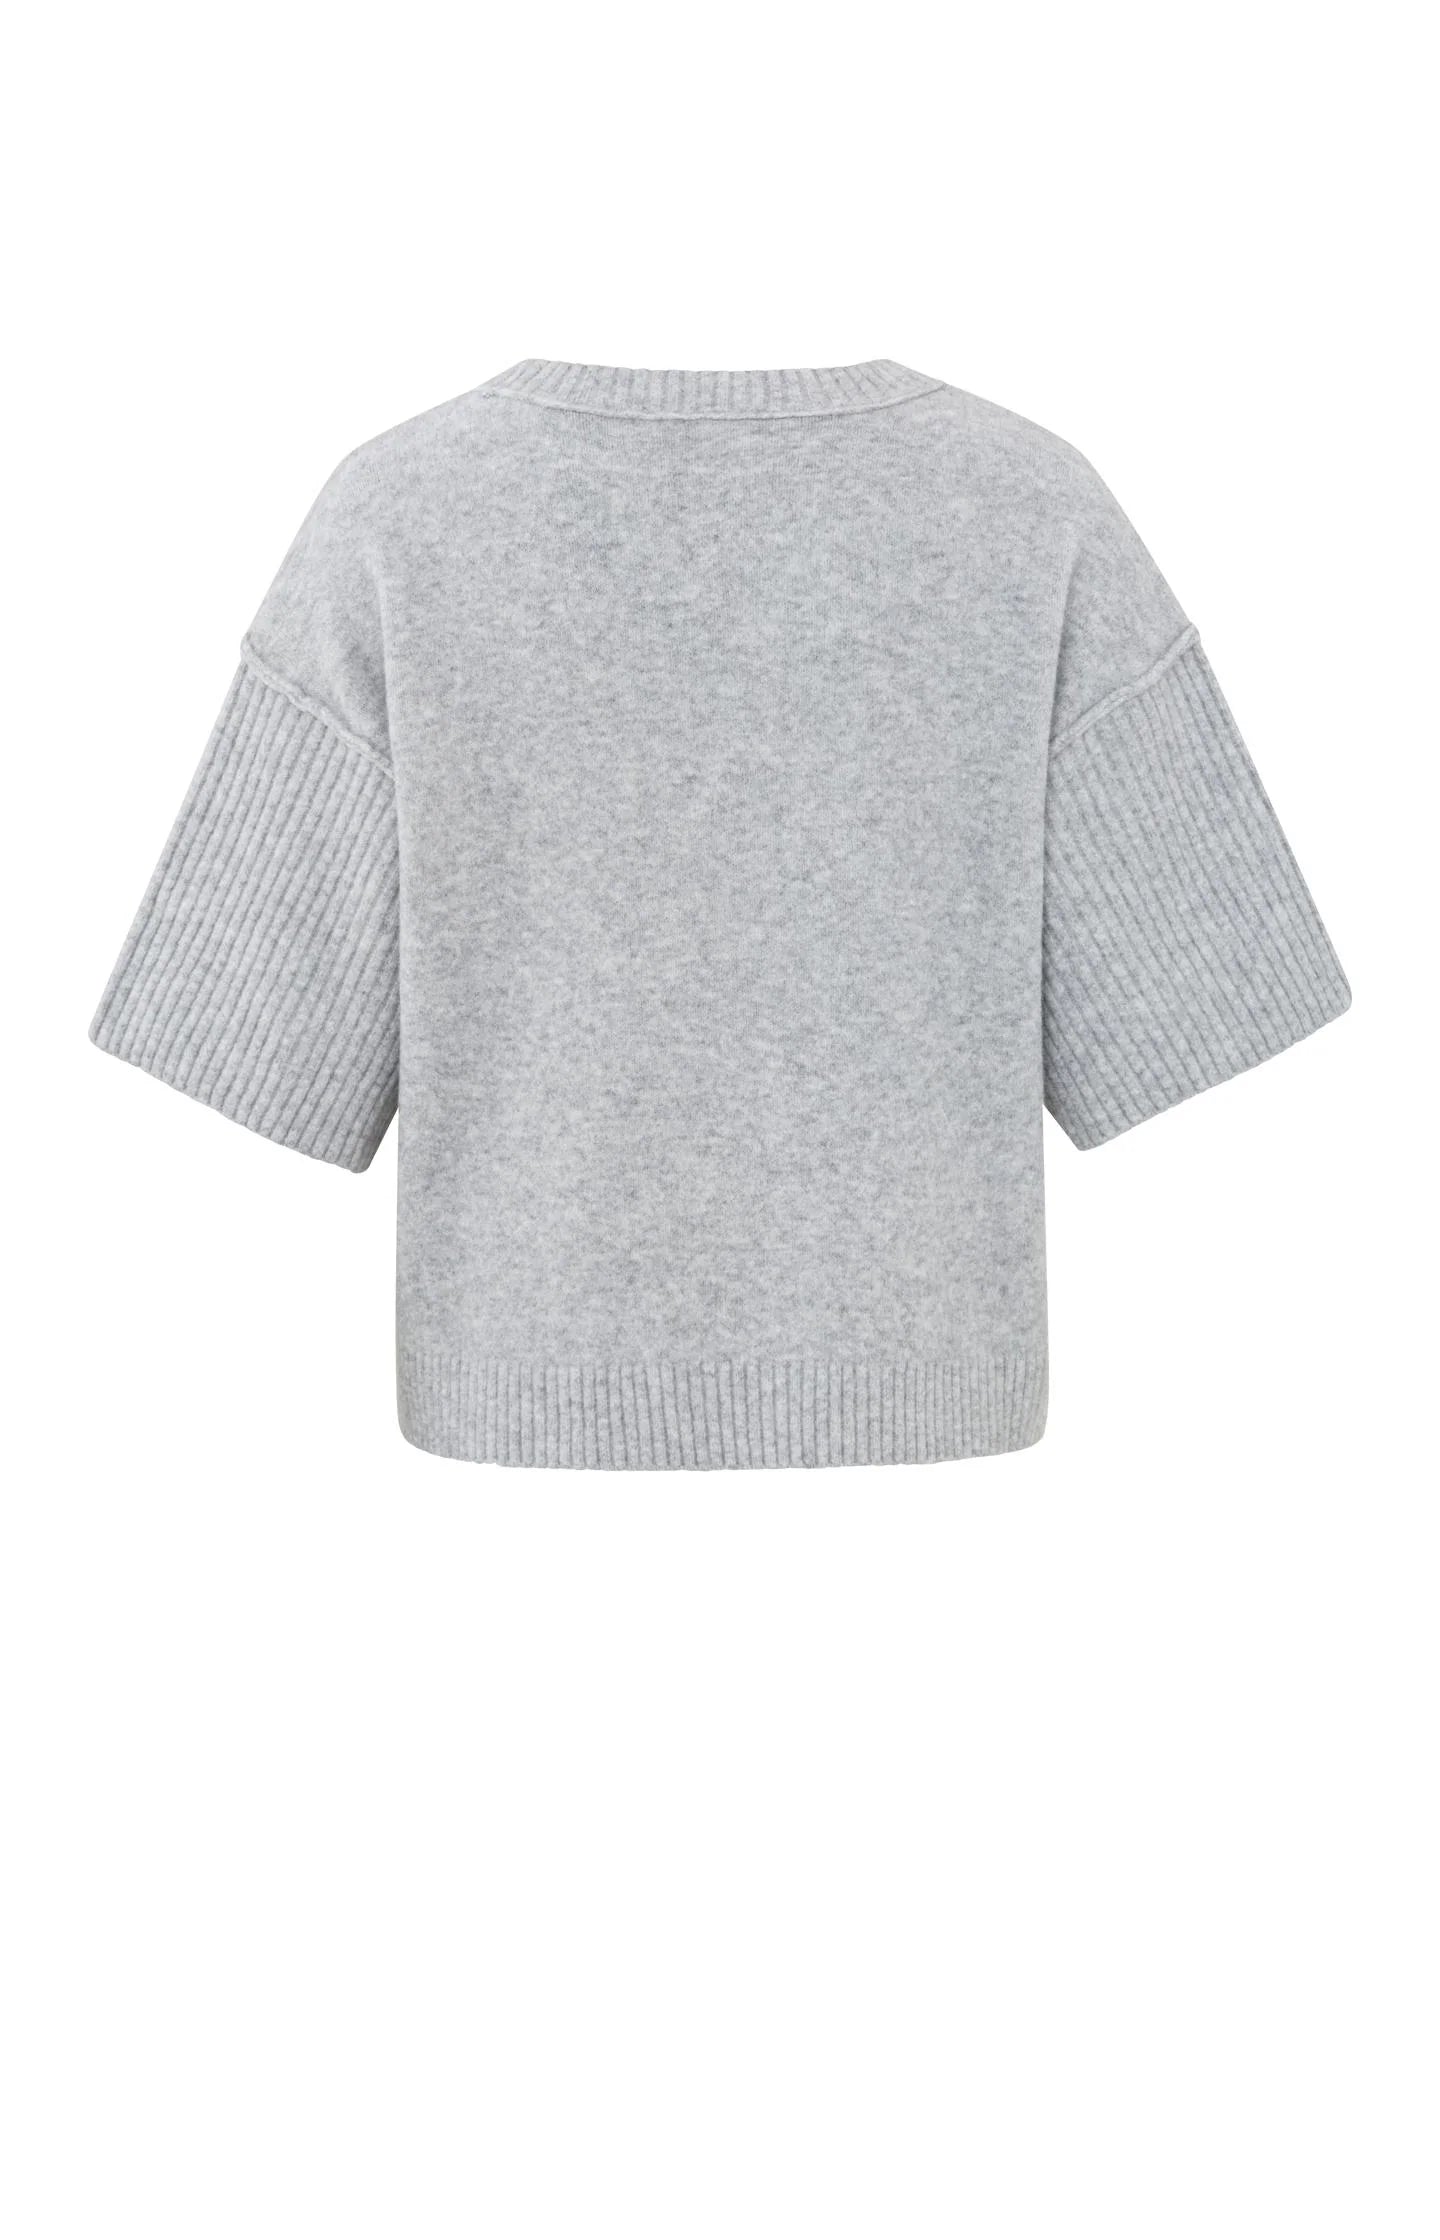 Boatneck Sweater in Grey Melange